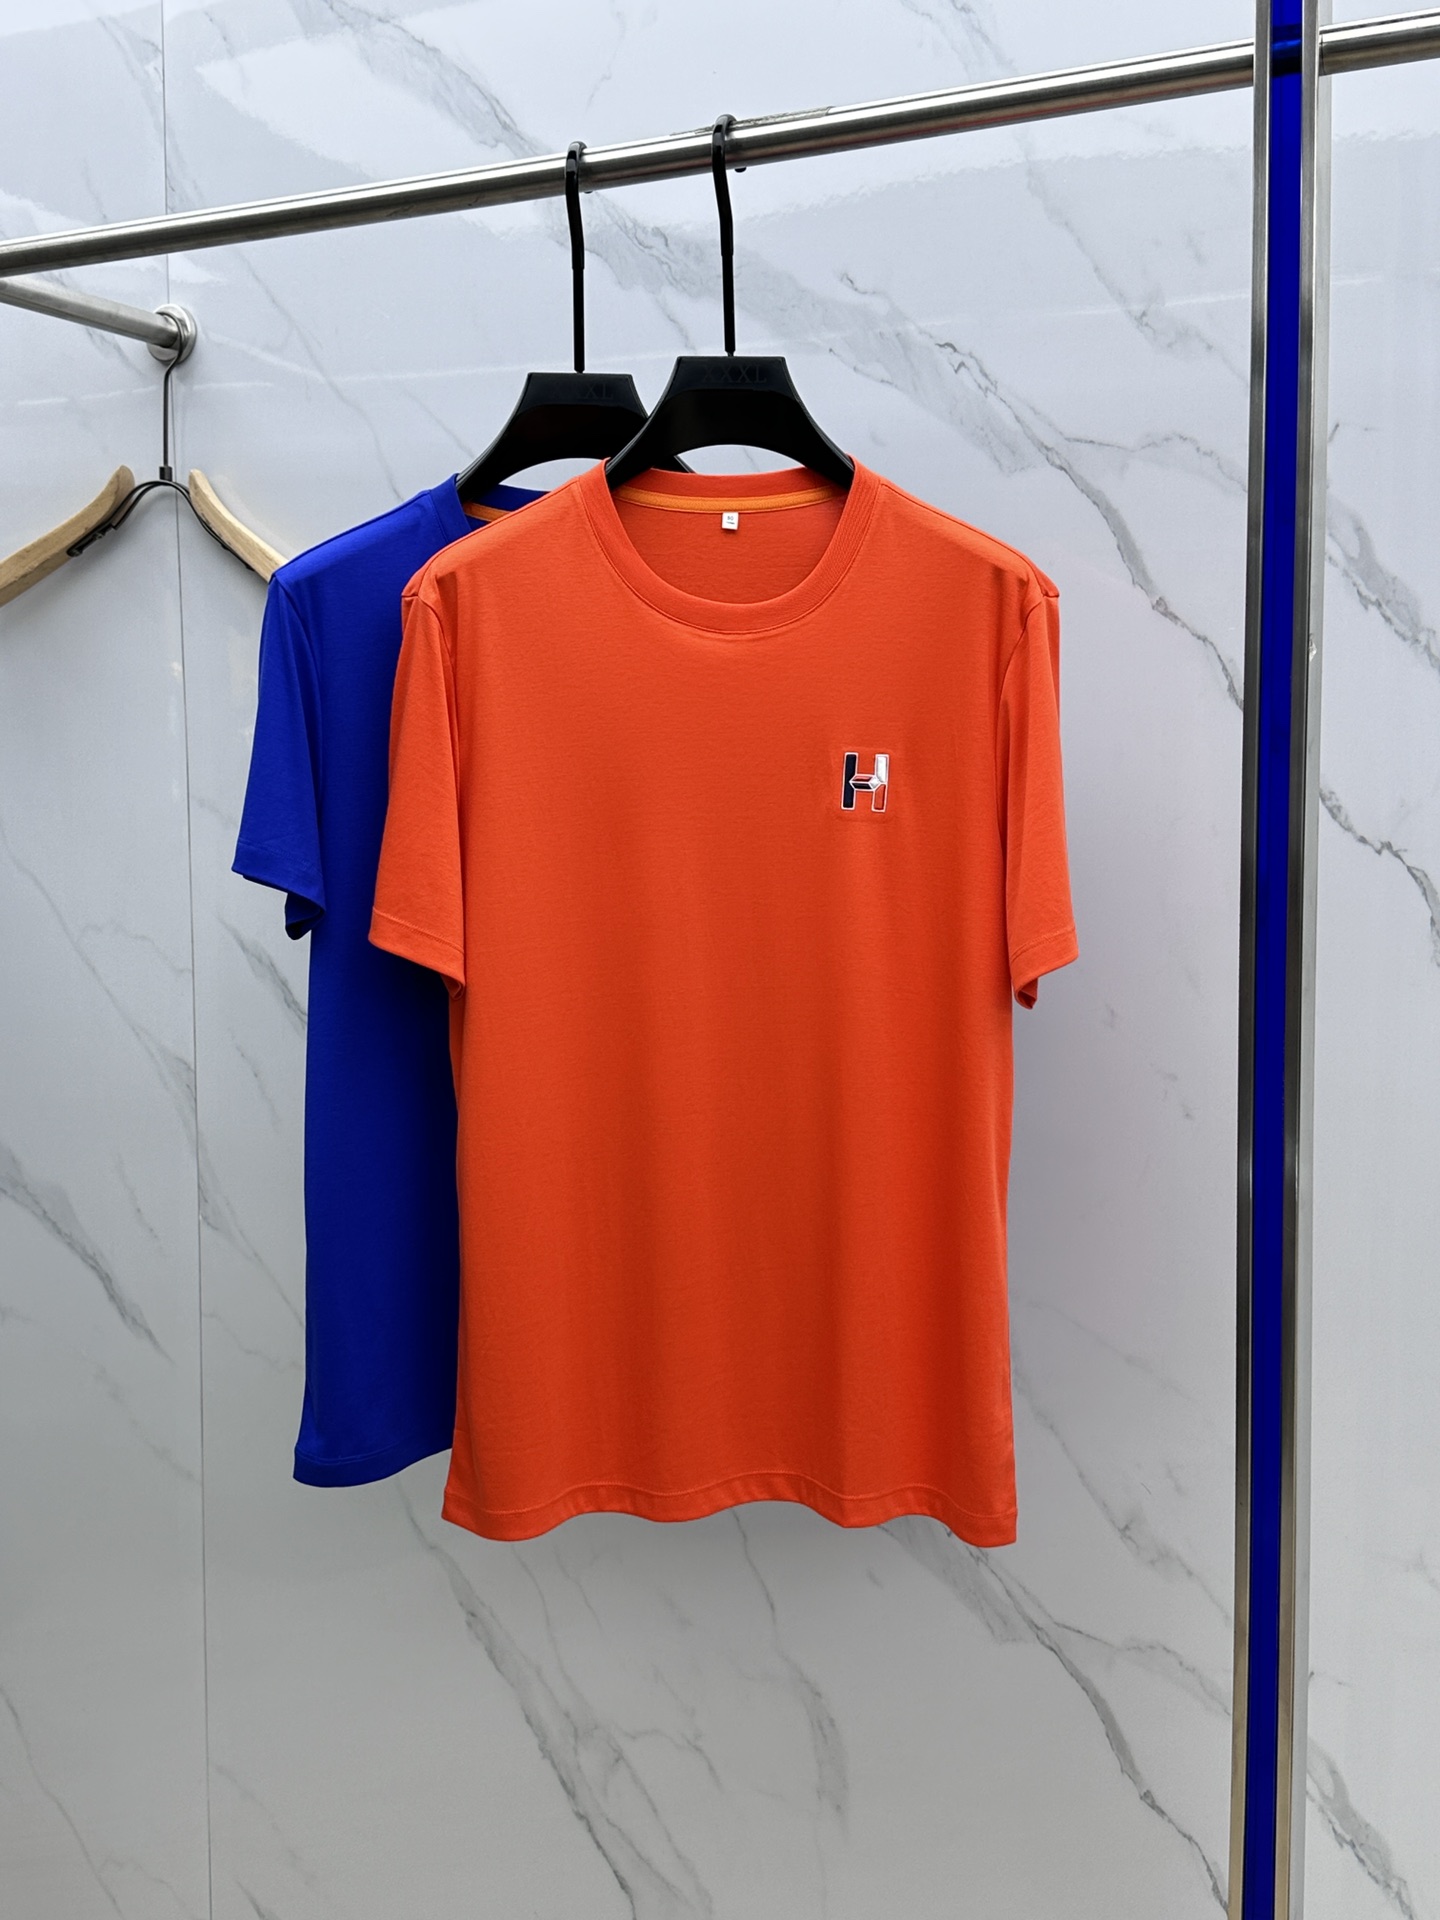 Hermes Vêtements T-Shirt Imprimé Coton mercerisé Manches courtes